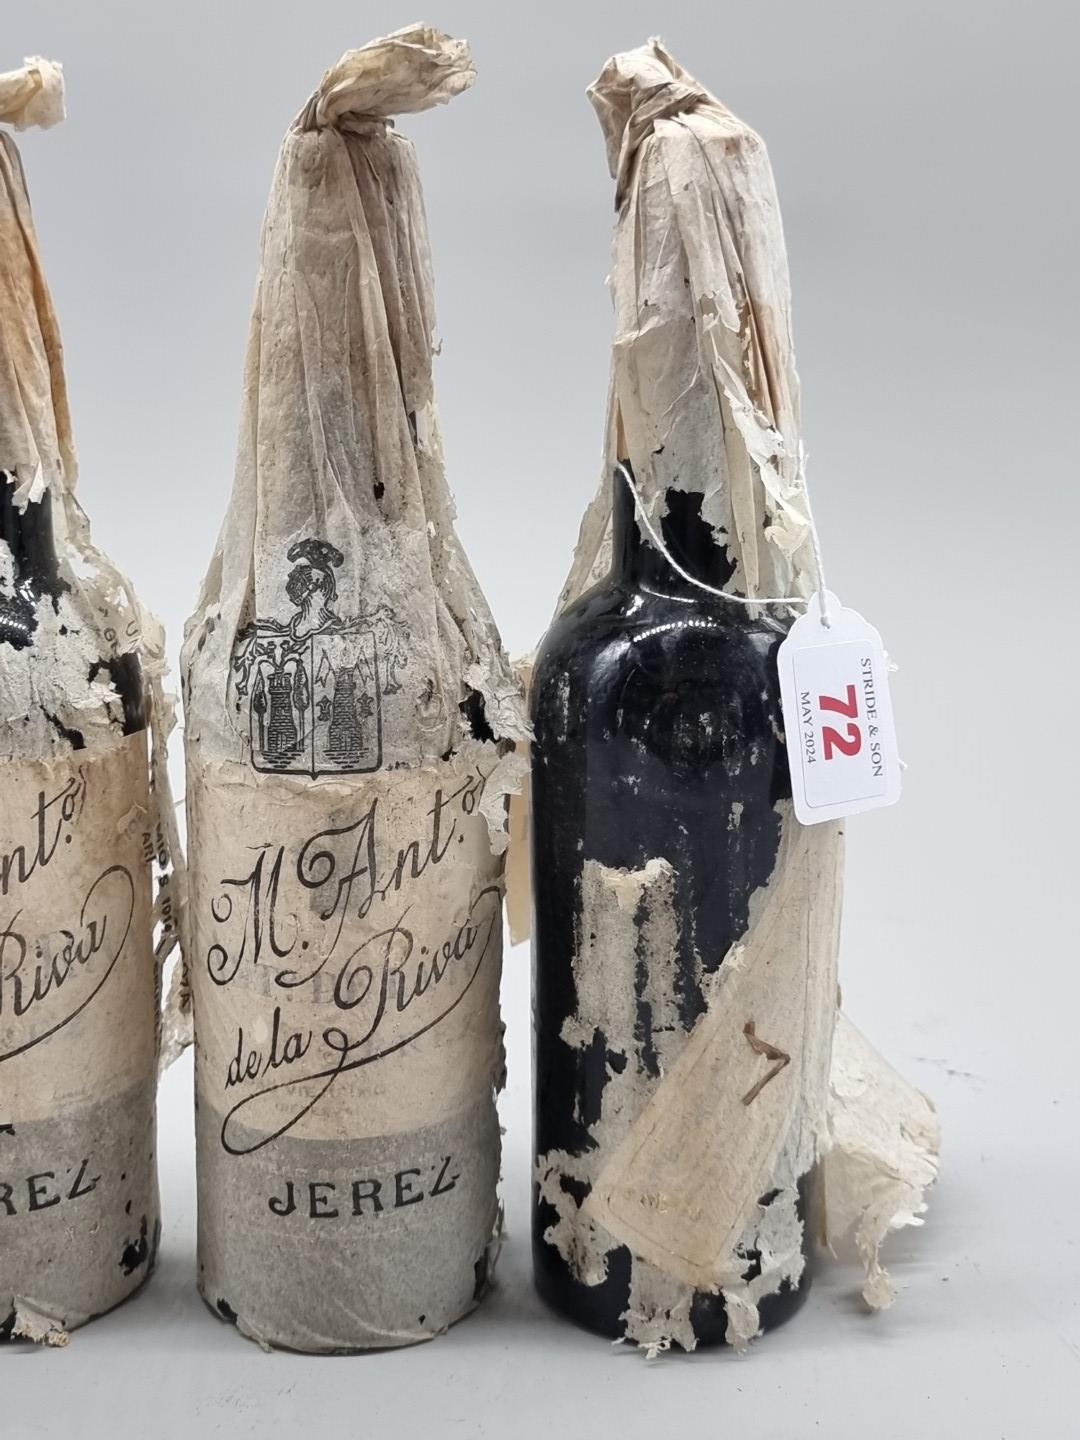 Four half bottles of Oloroso Viejisimo Sherry, Antonio de la Riva, 1940s bottling. (4) - Image 3 of 3